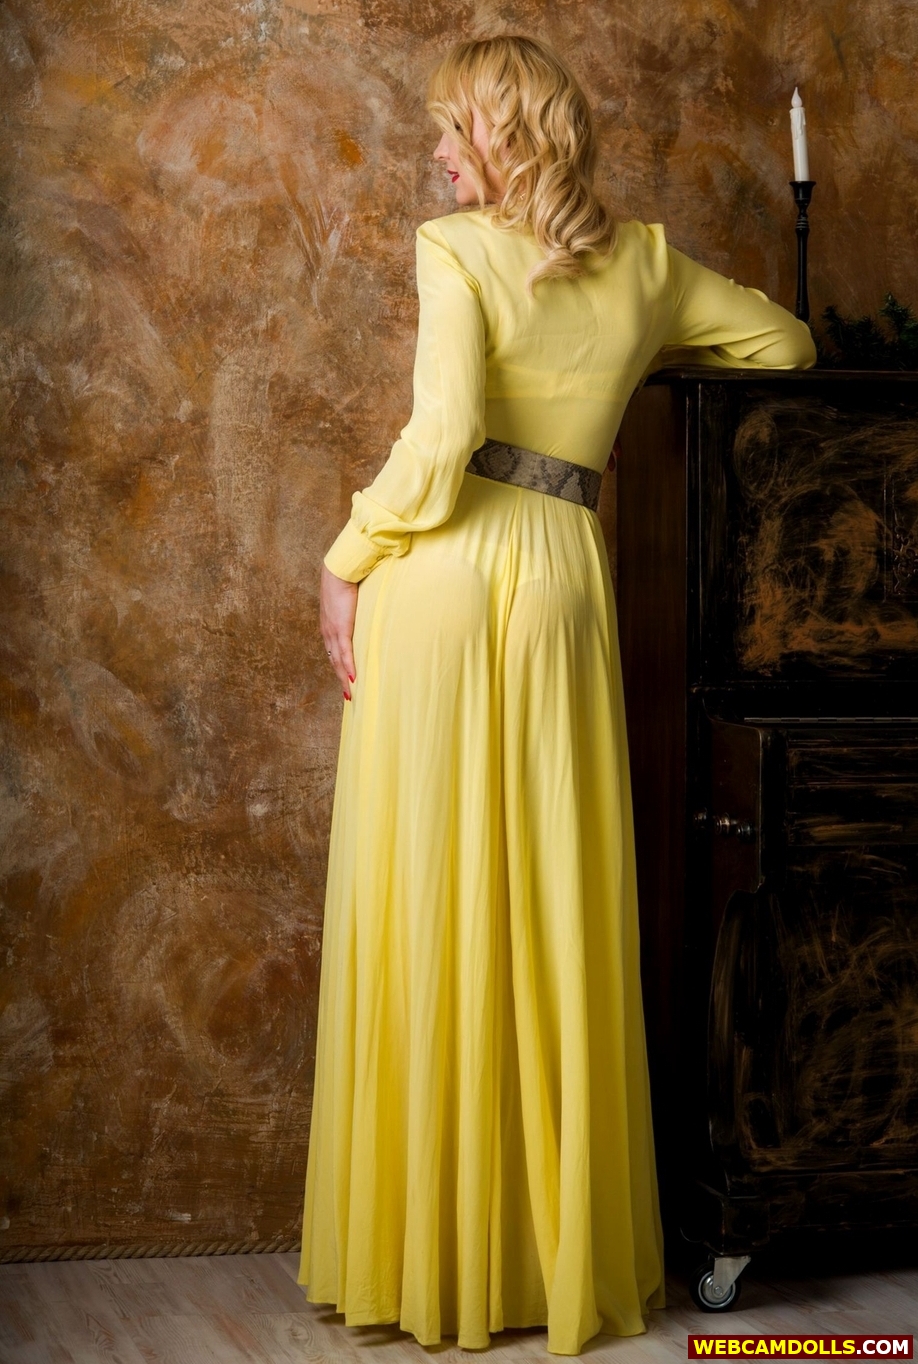 Blonde MILF showing Butt Through Yellow Long Dress on Webcamdolls